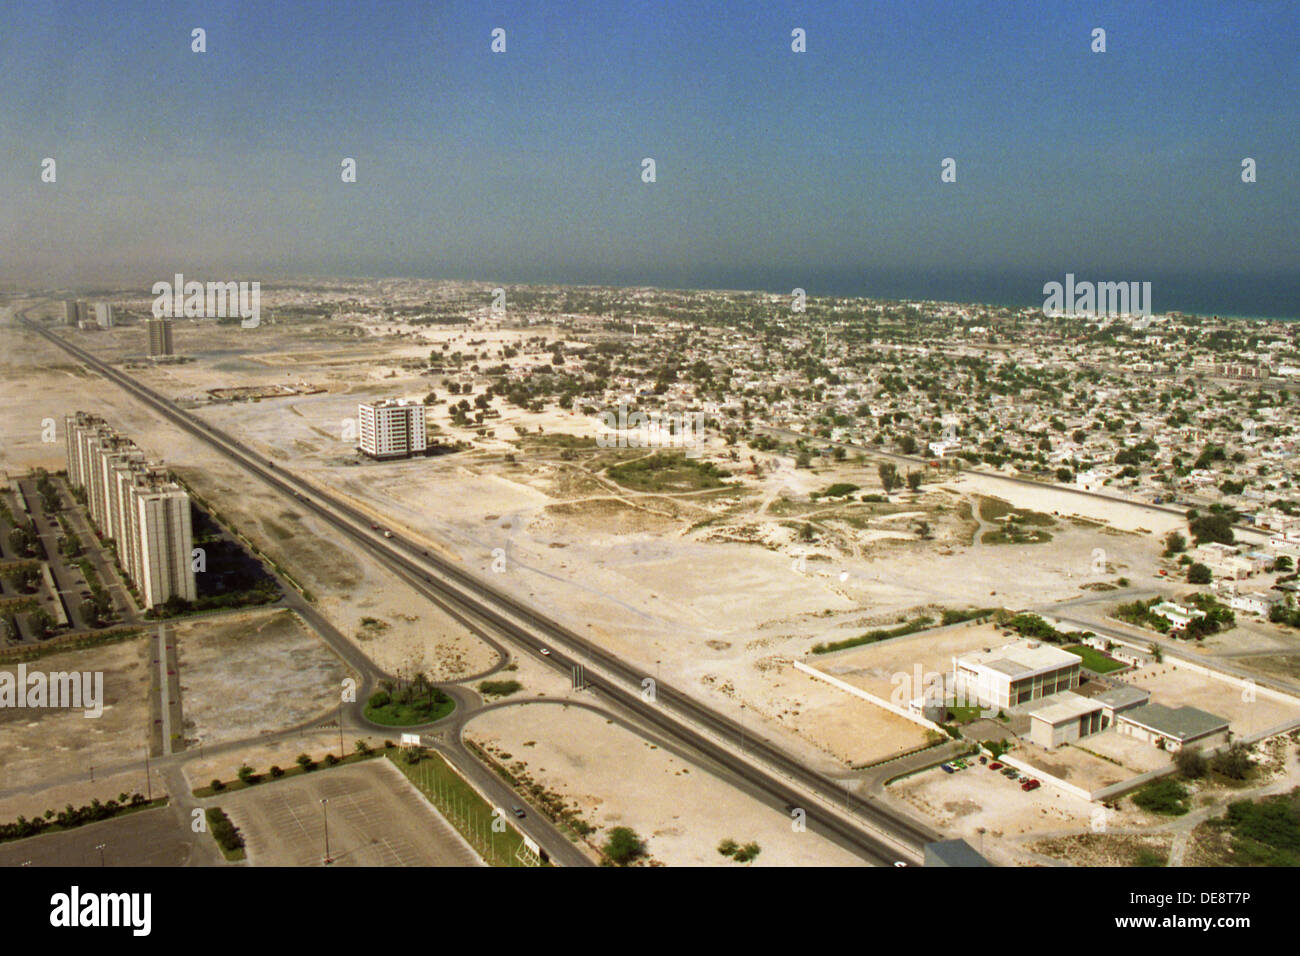 Dubai, United Arab Emirates, overlooking the Sheikh Zayed Road towards Abu Dhabi World Trade Center Stock Photo